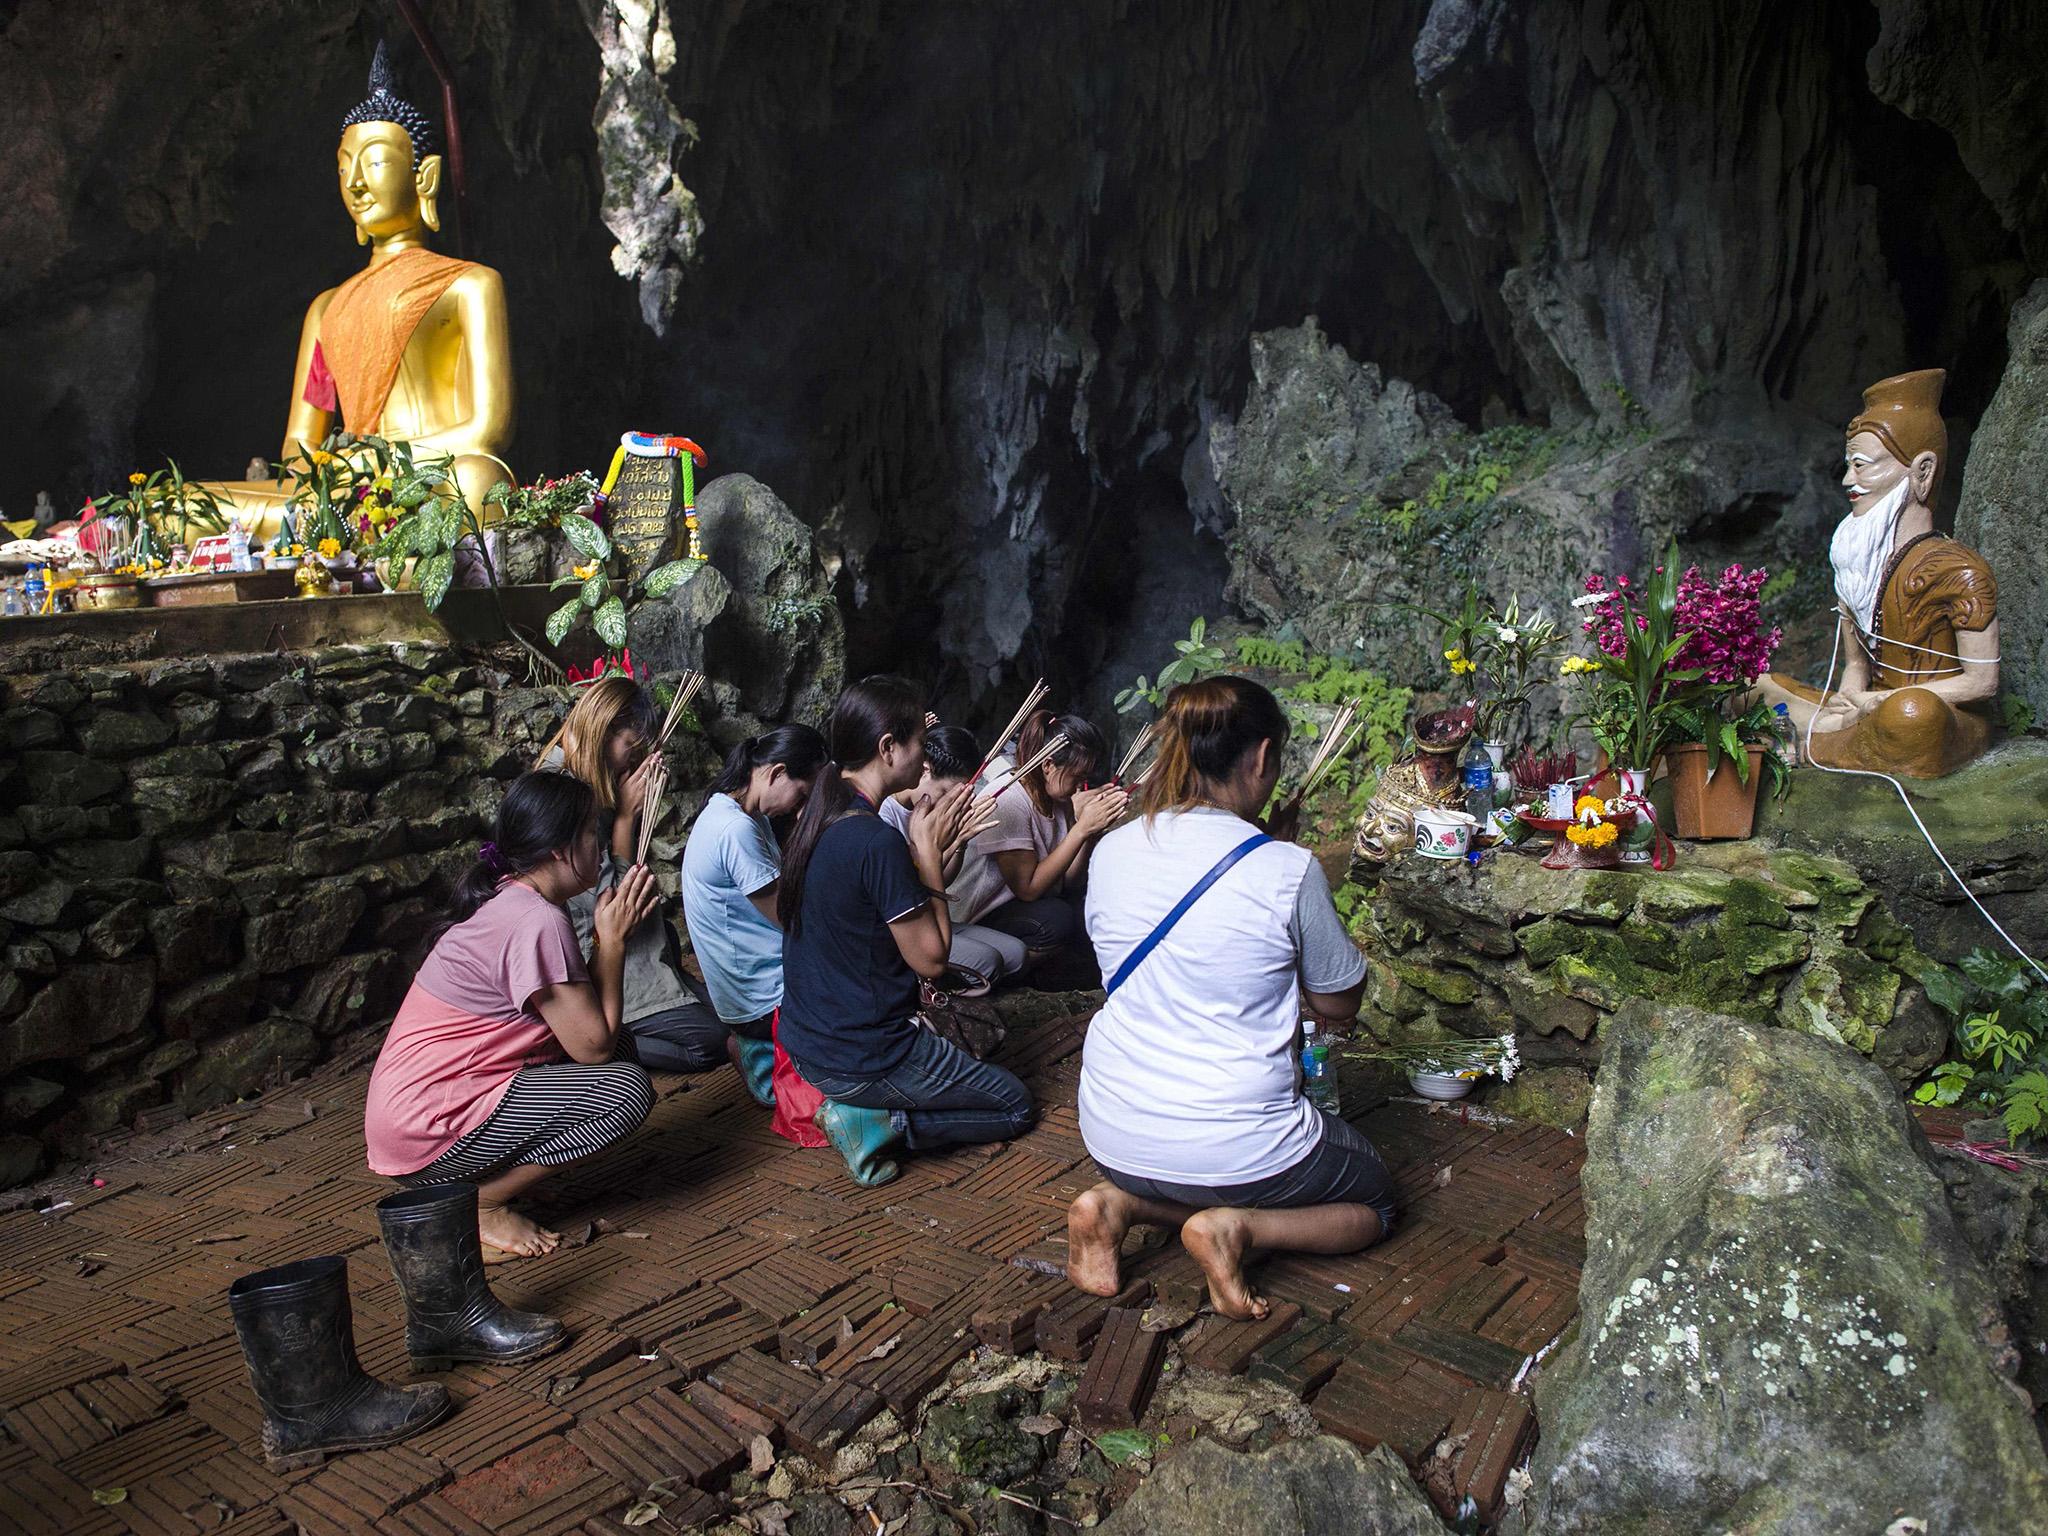 Αγωνία για τα παιδιά στην Ταϊλάνδη: «Ψάχνουμε να βρούμε άλλη είσοδο για την σπηλιά αλλιώς… »